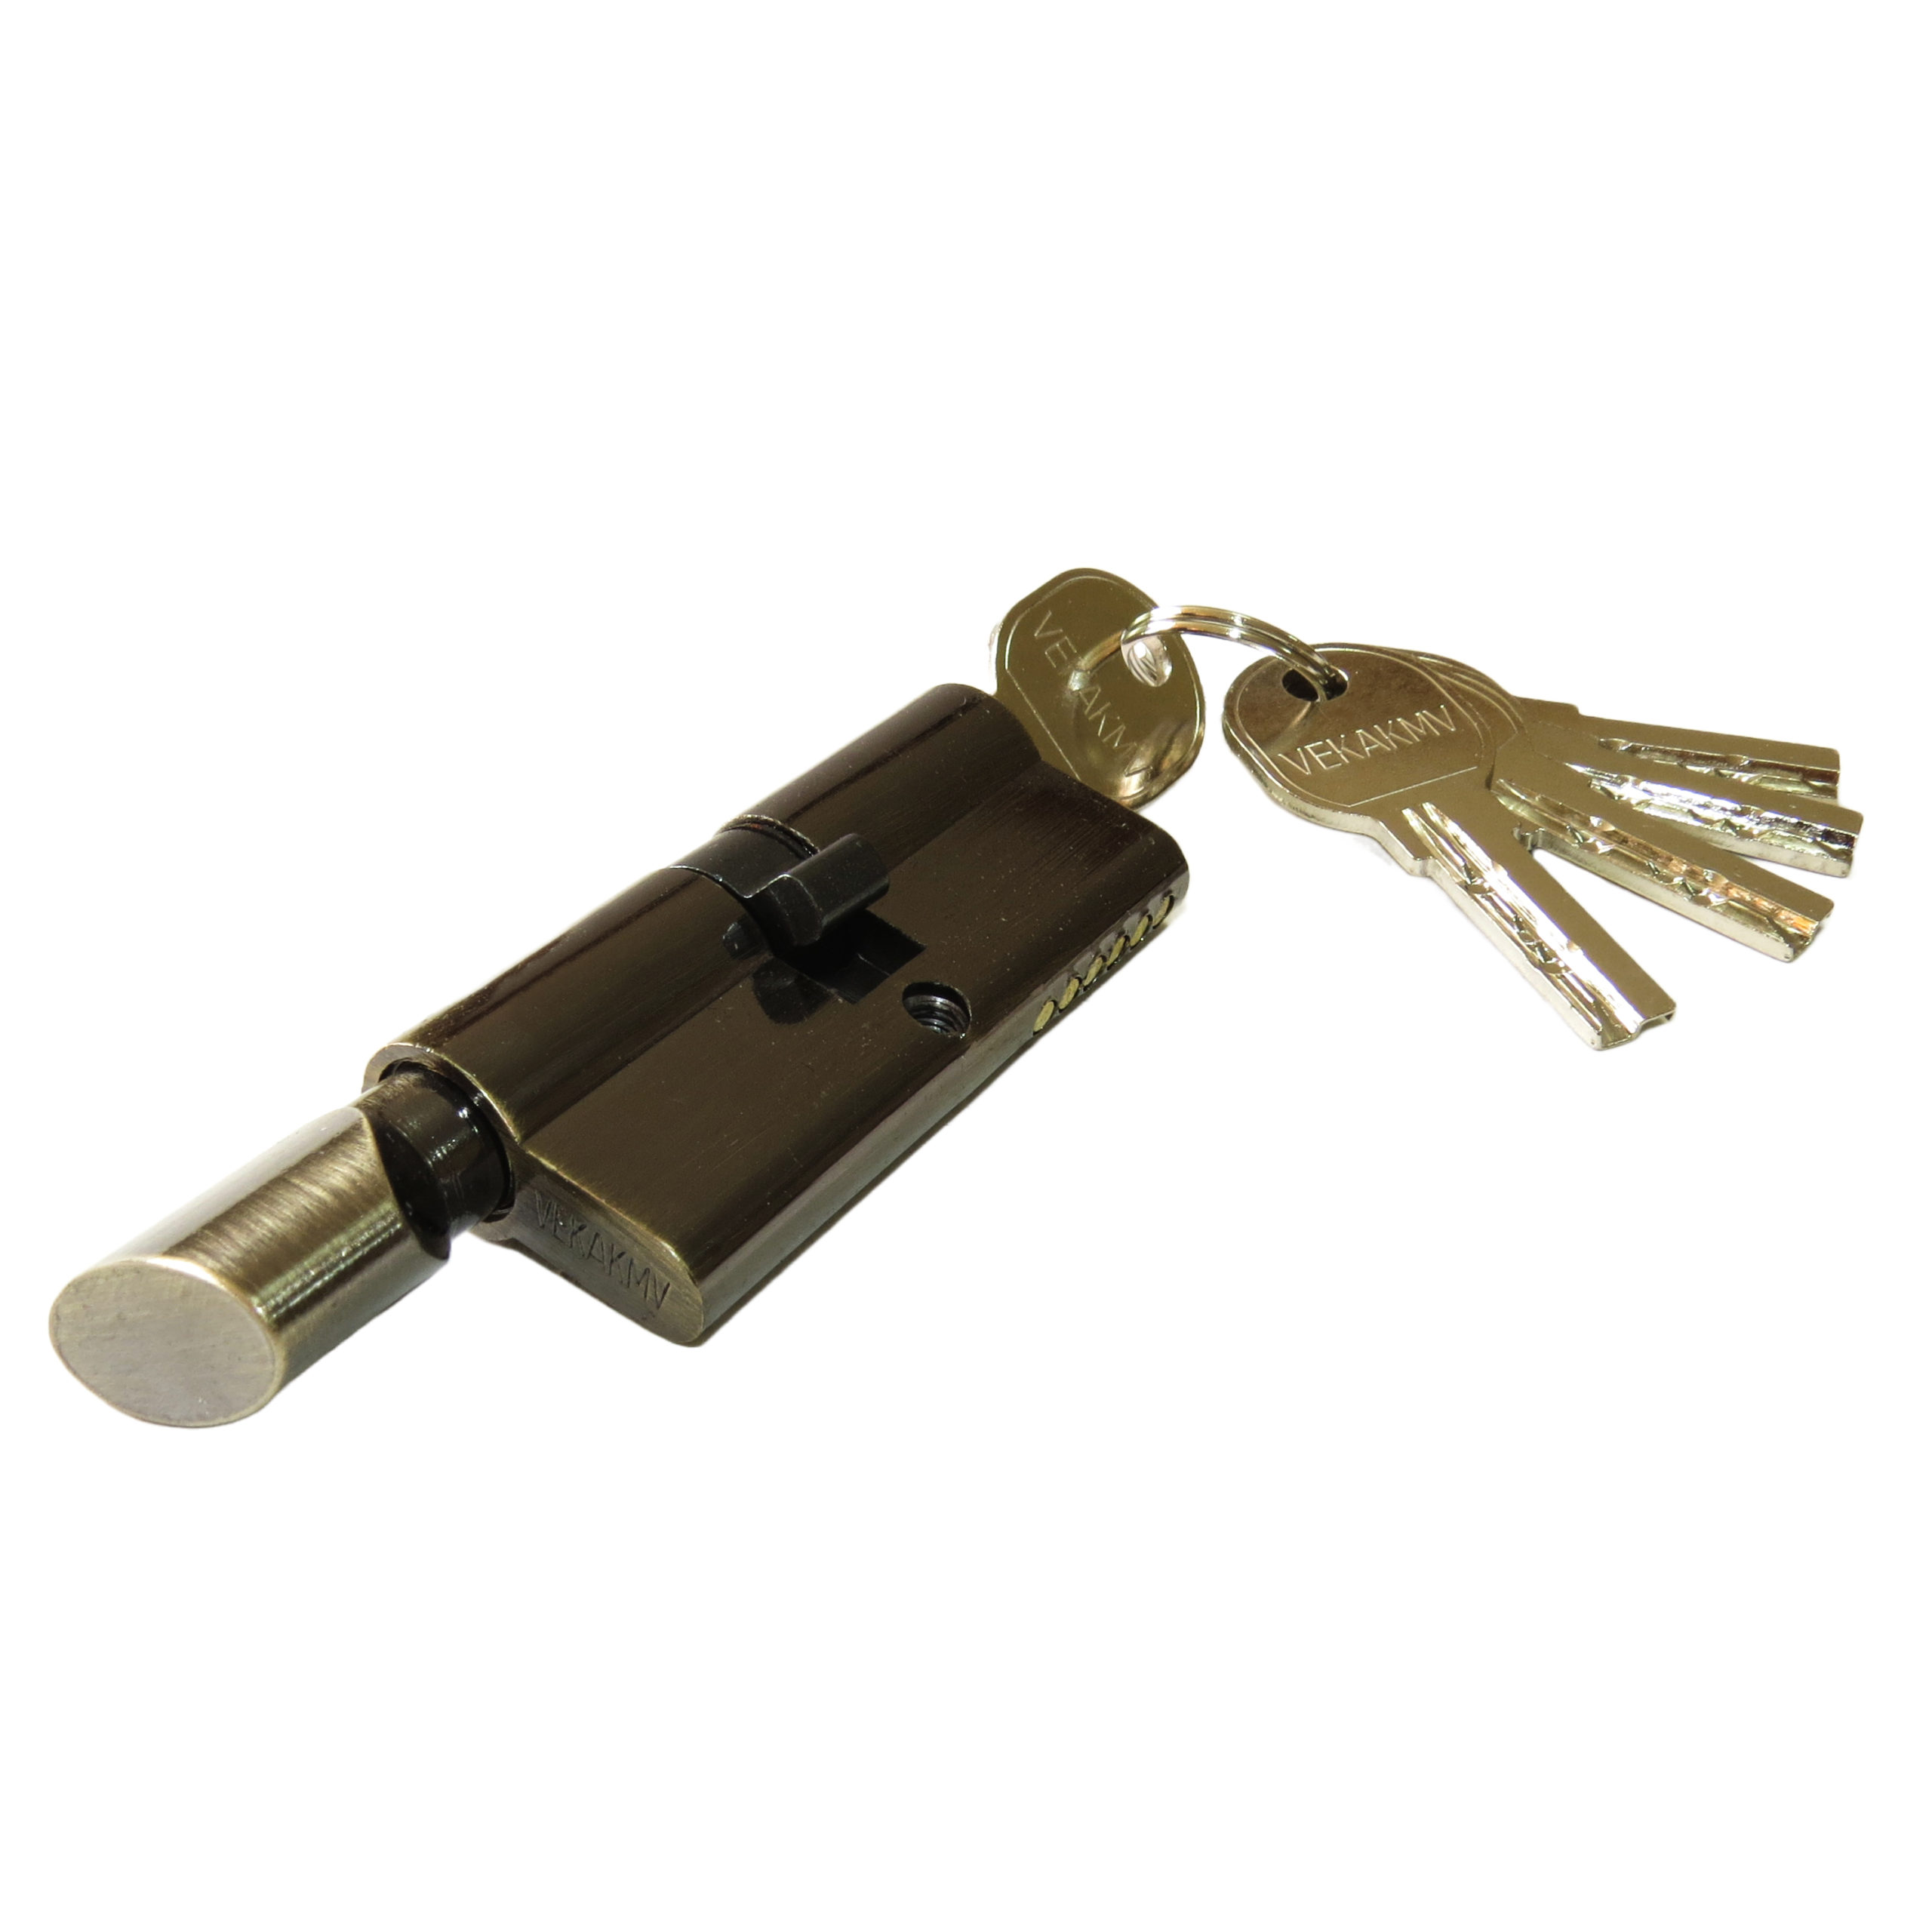 Личинка лазер.5-ю ключами с вертушкой бронза 70мм VK-1941 (1*120)